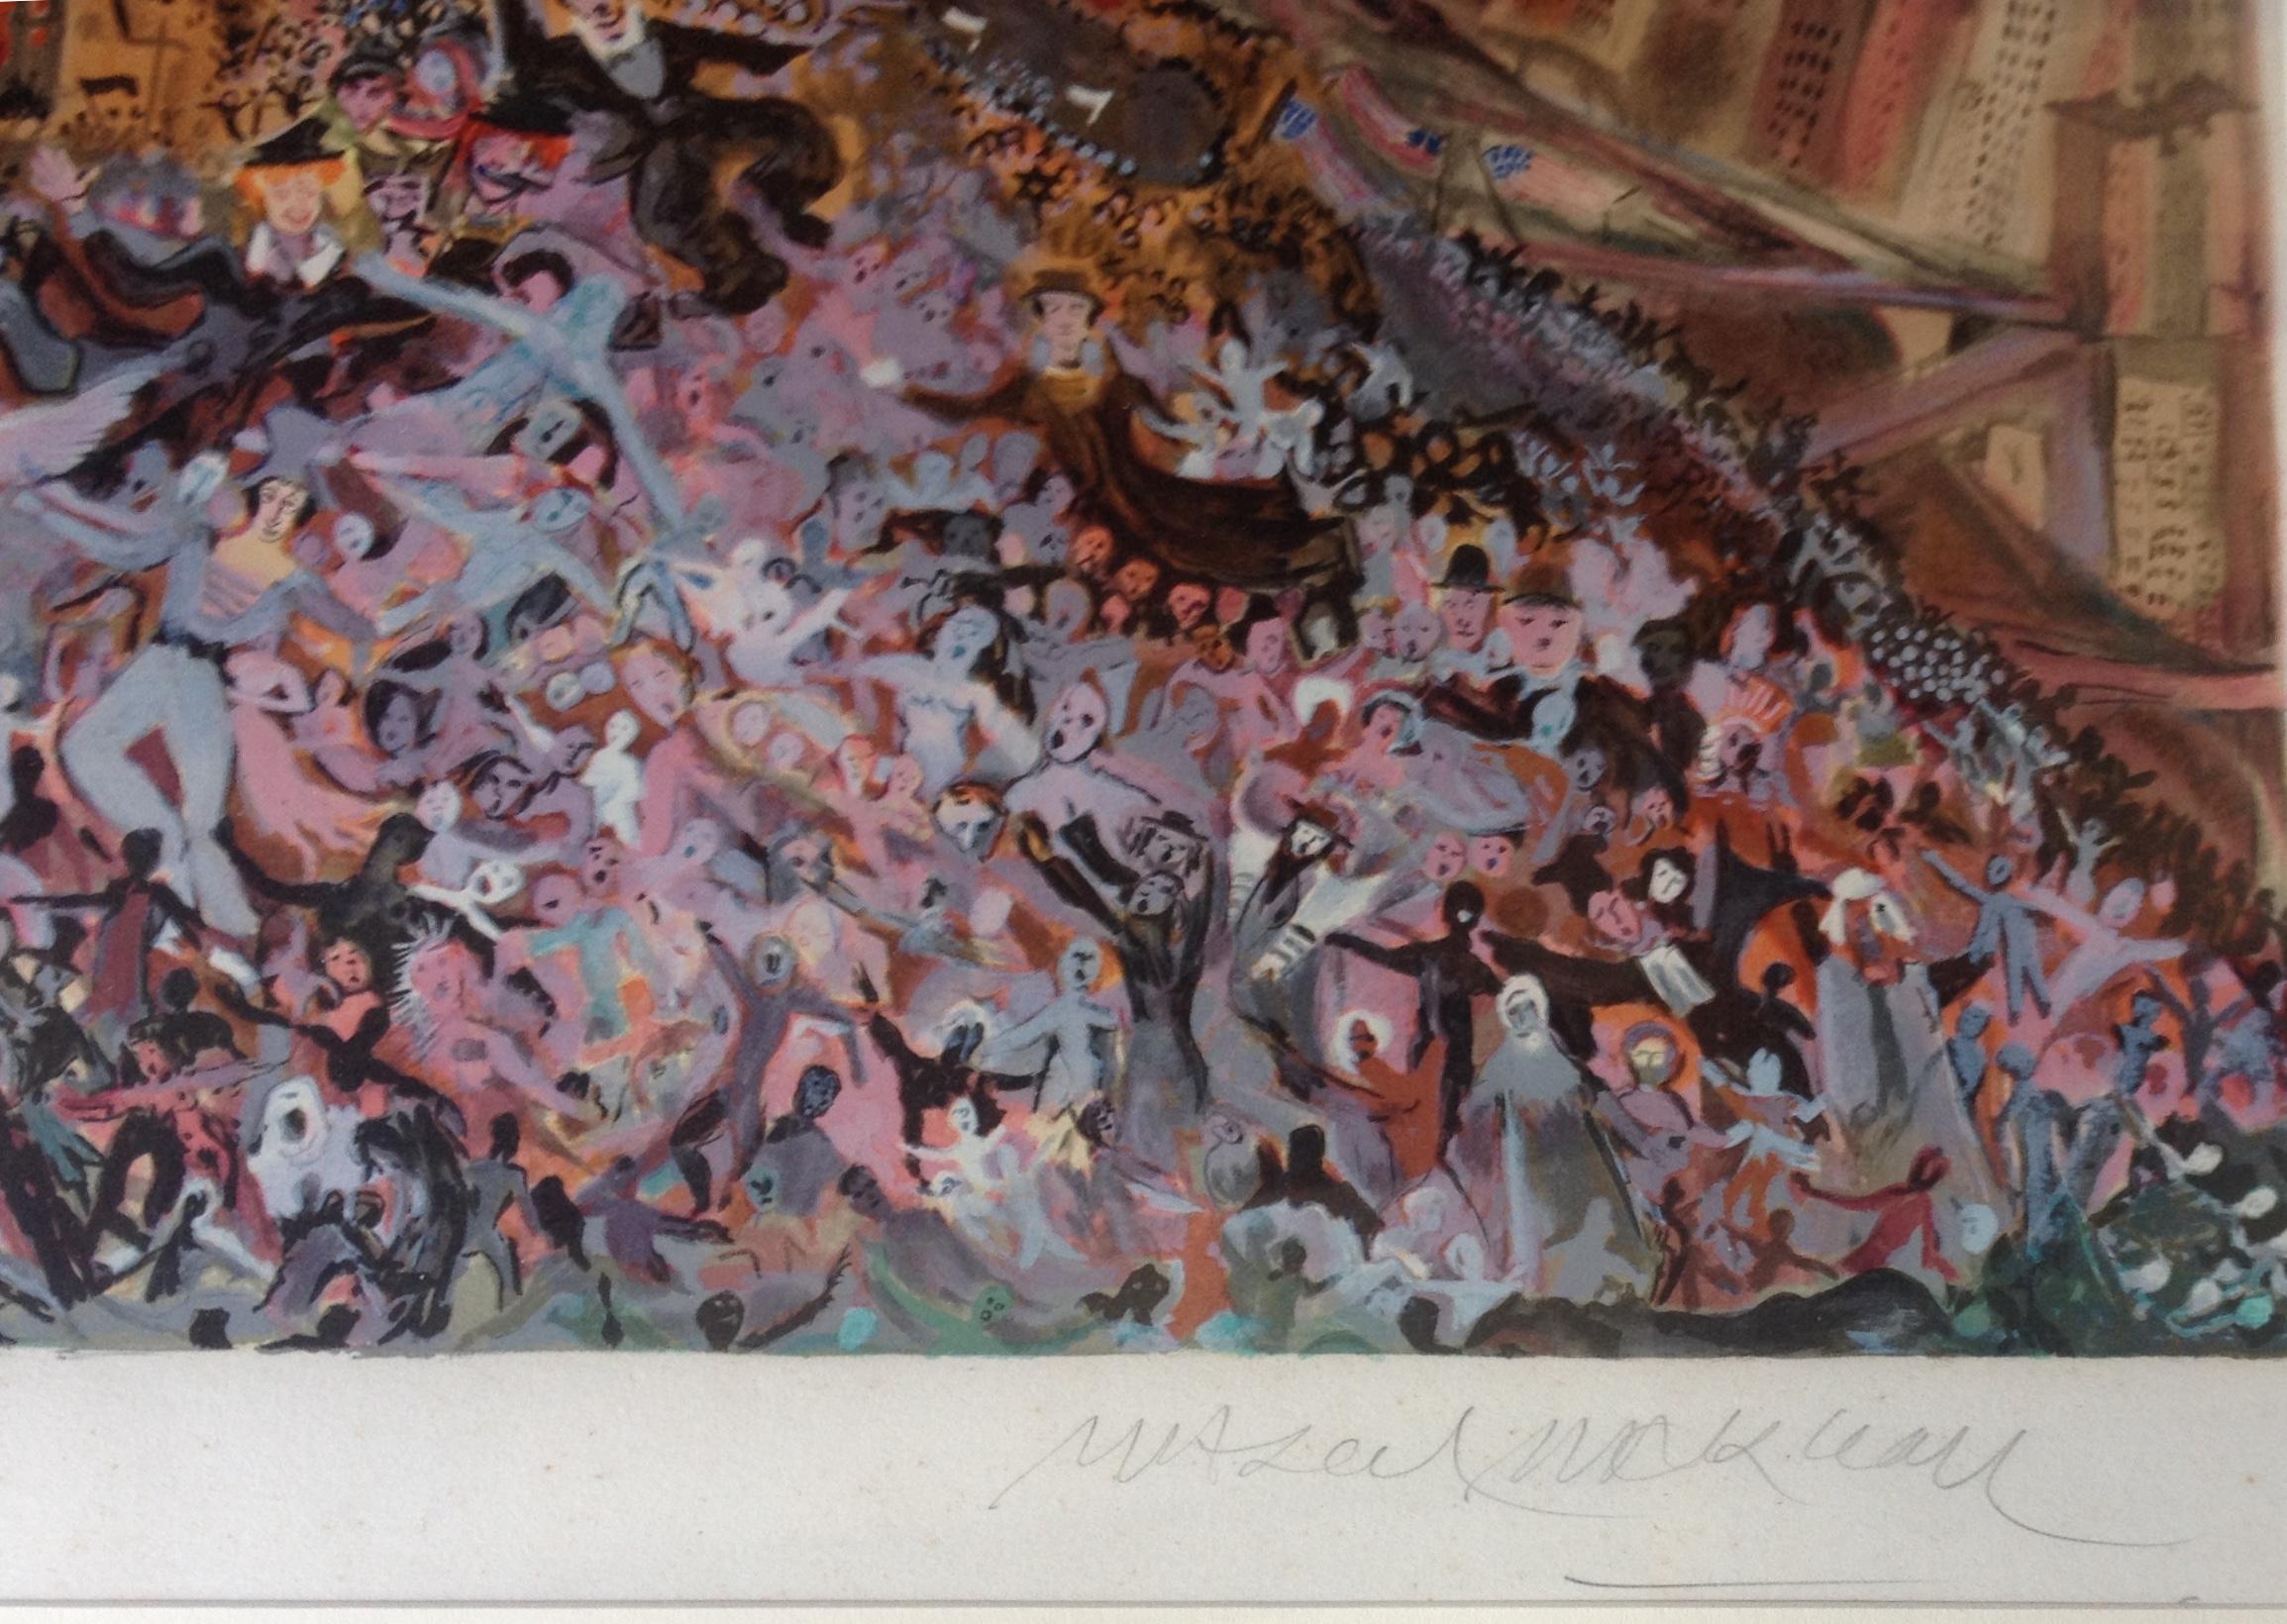 Dieses Kunstwerk ist eine originale Farblithographie auf Arches-Papier des französischen Künstlers Marcel (le Mime) Marceau, 1923-2007.   Seine Unterschrift ist mit Bleistift unten rechts, das Kunstwerk ist nummeriert. 

Der Druck zeigt eine große